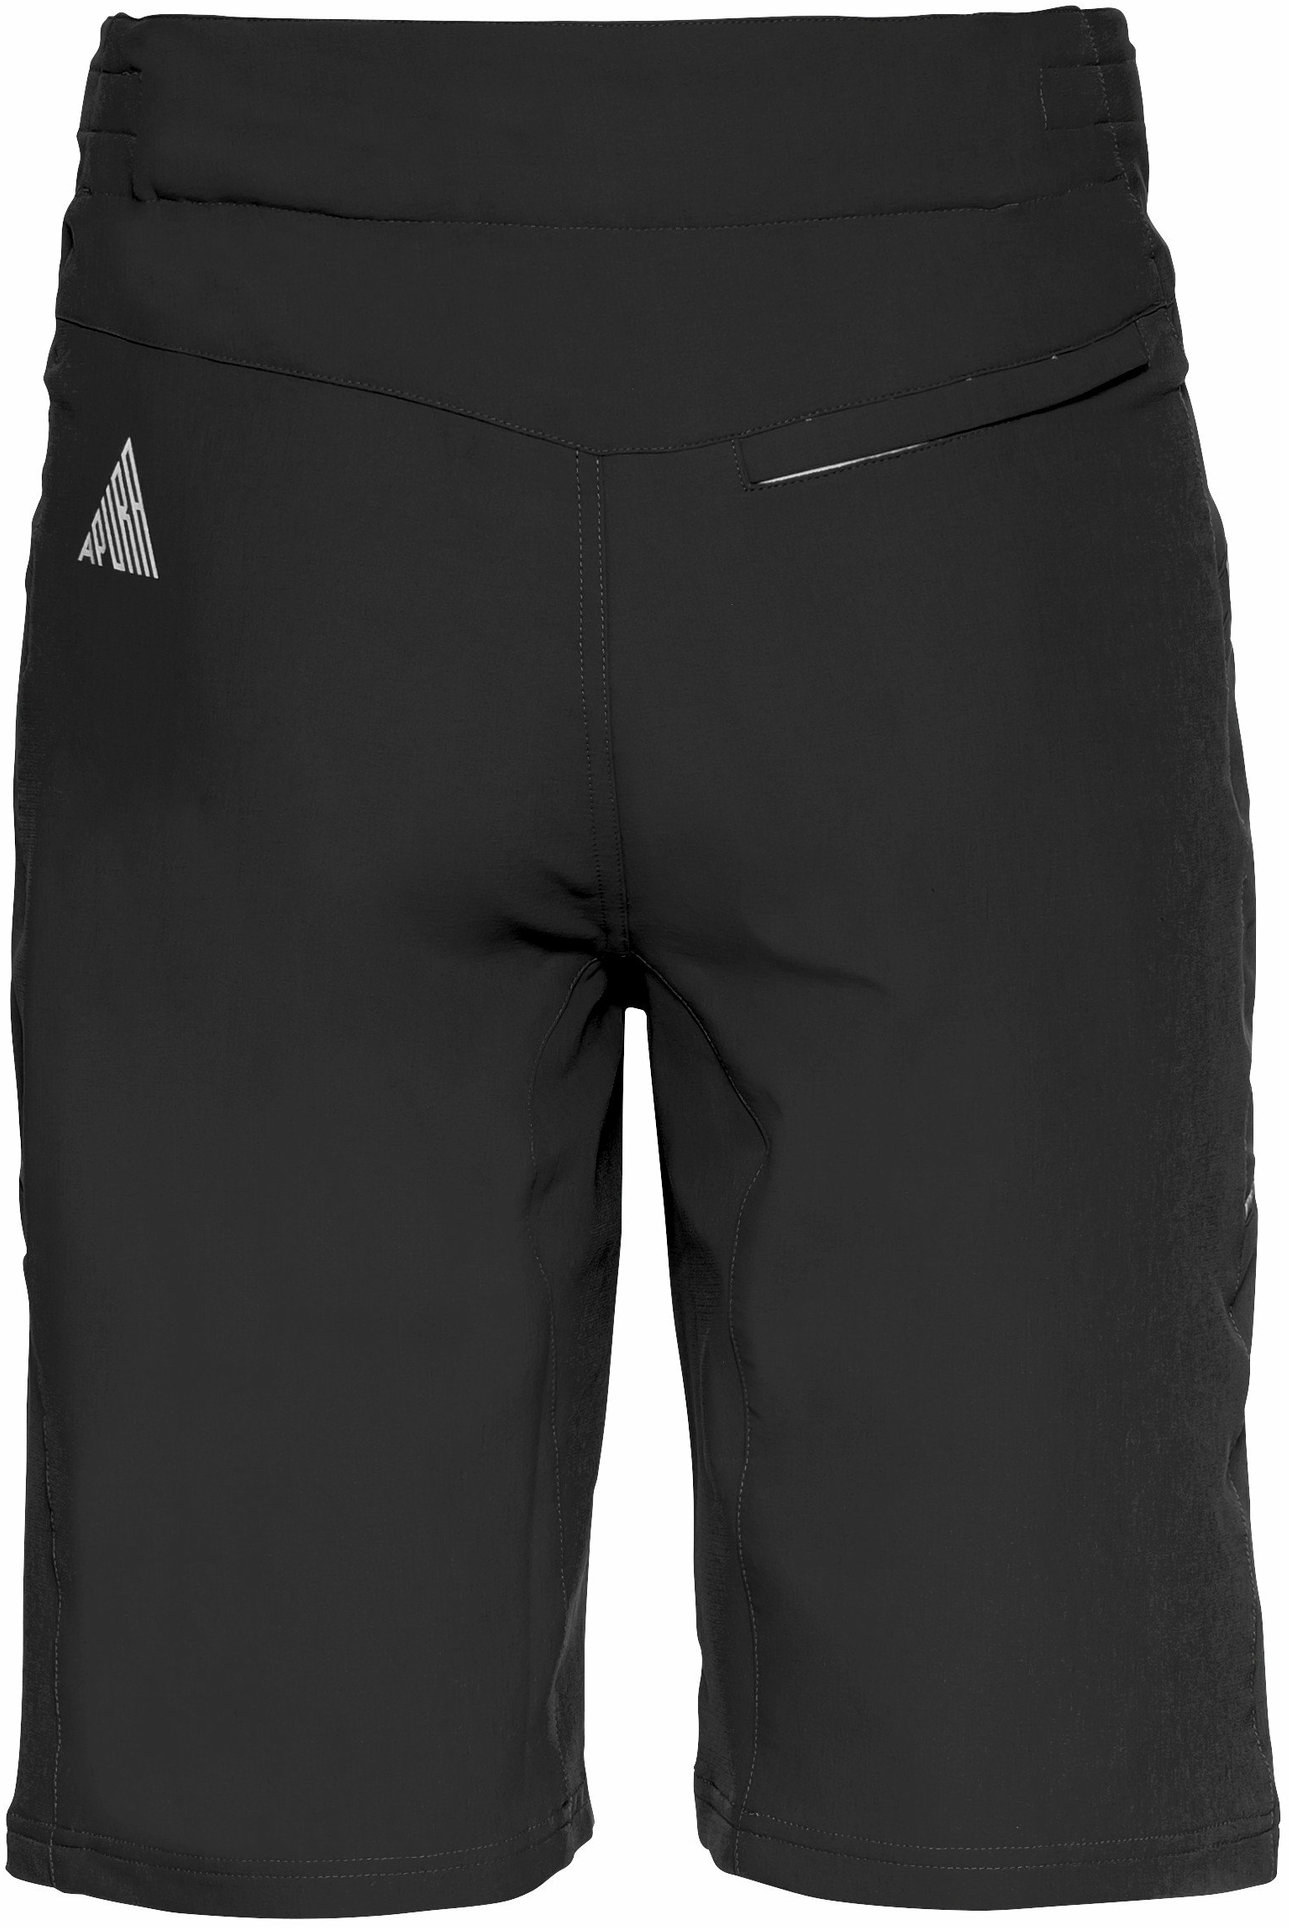 Apura Herren Shorts MTB Shorts Pure